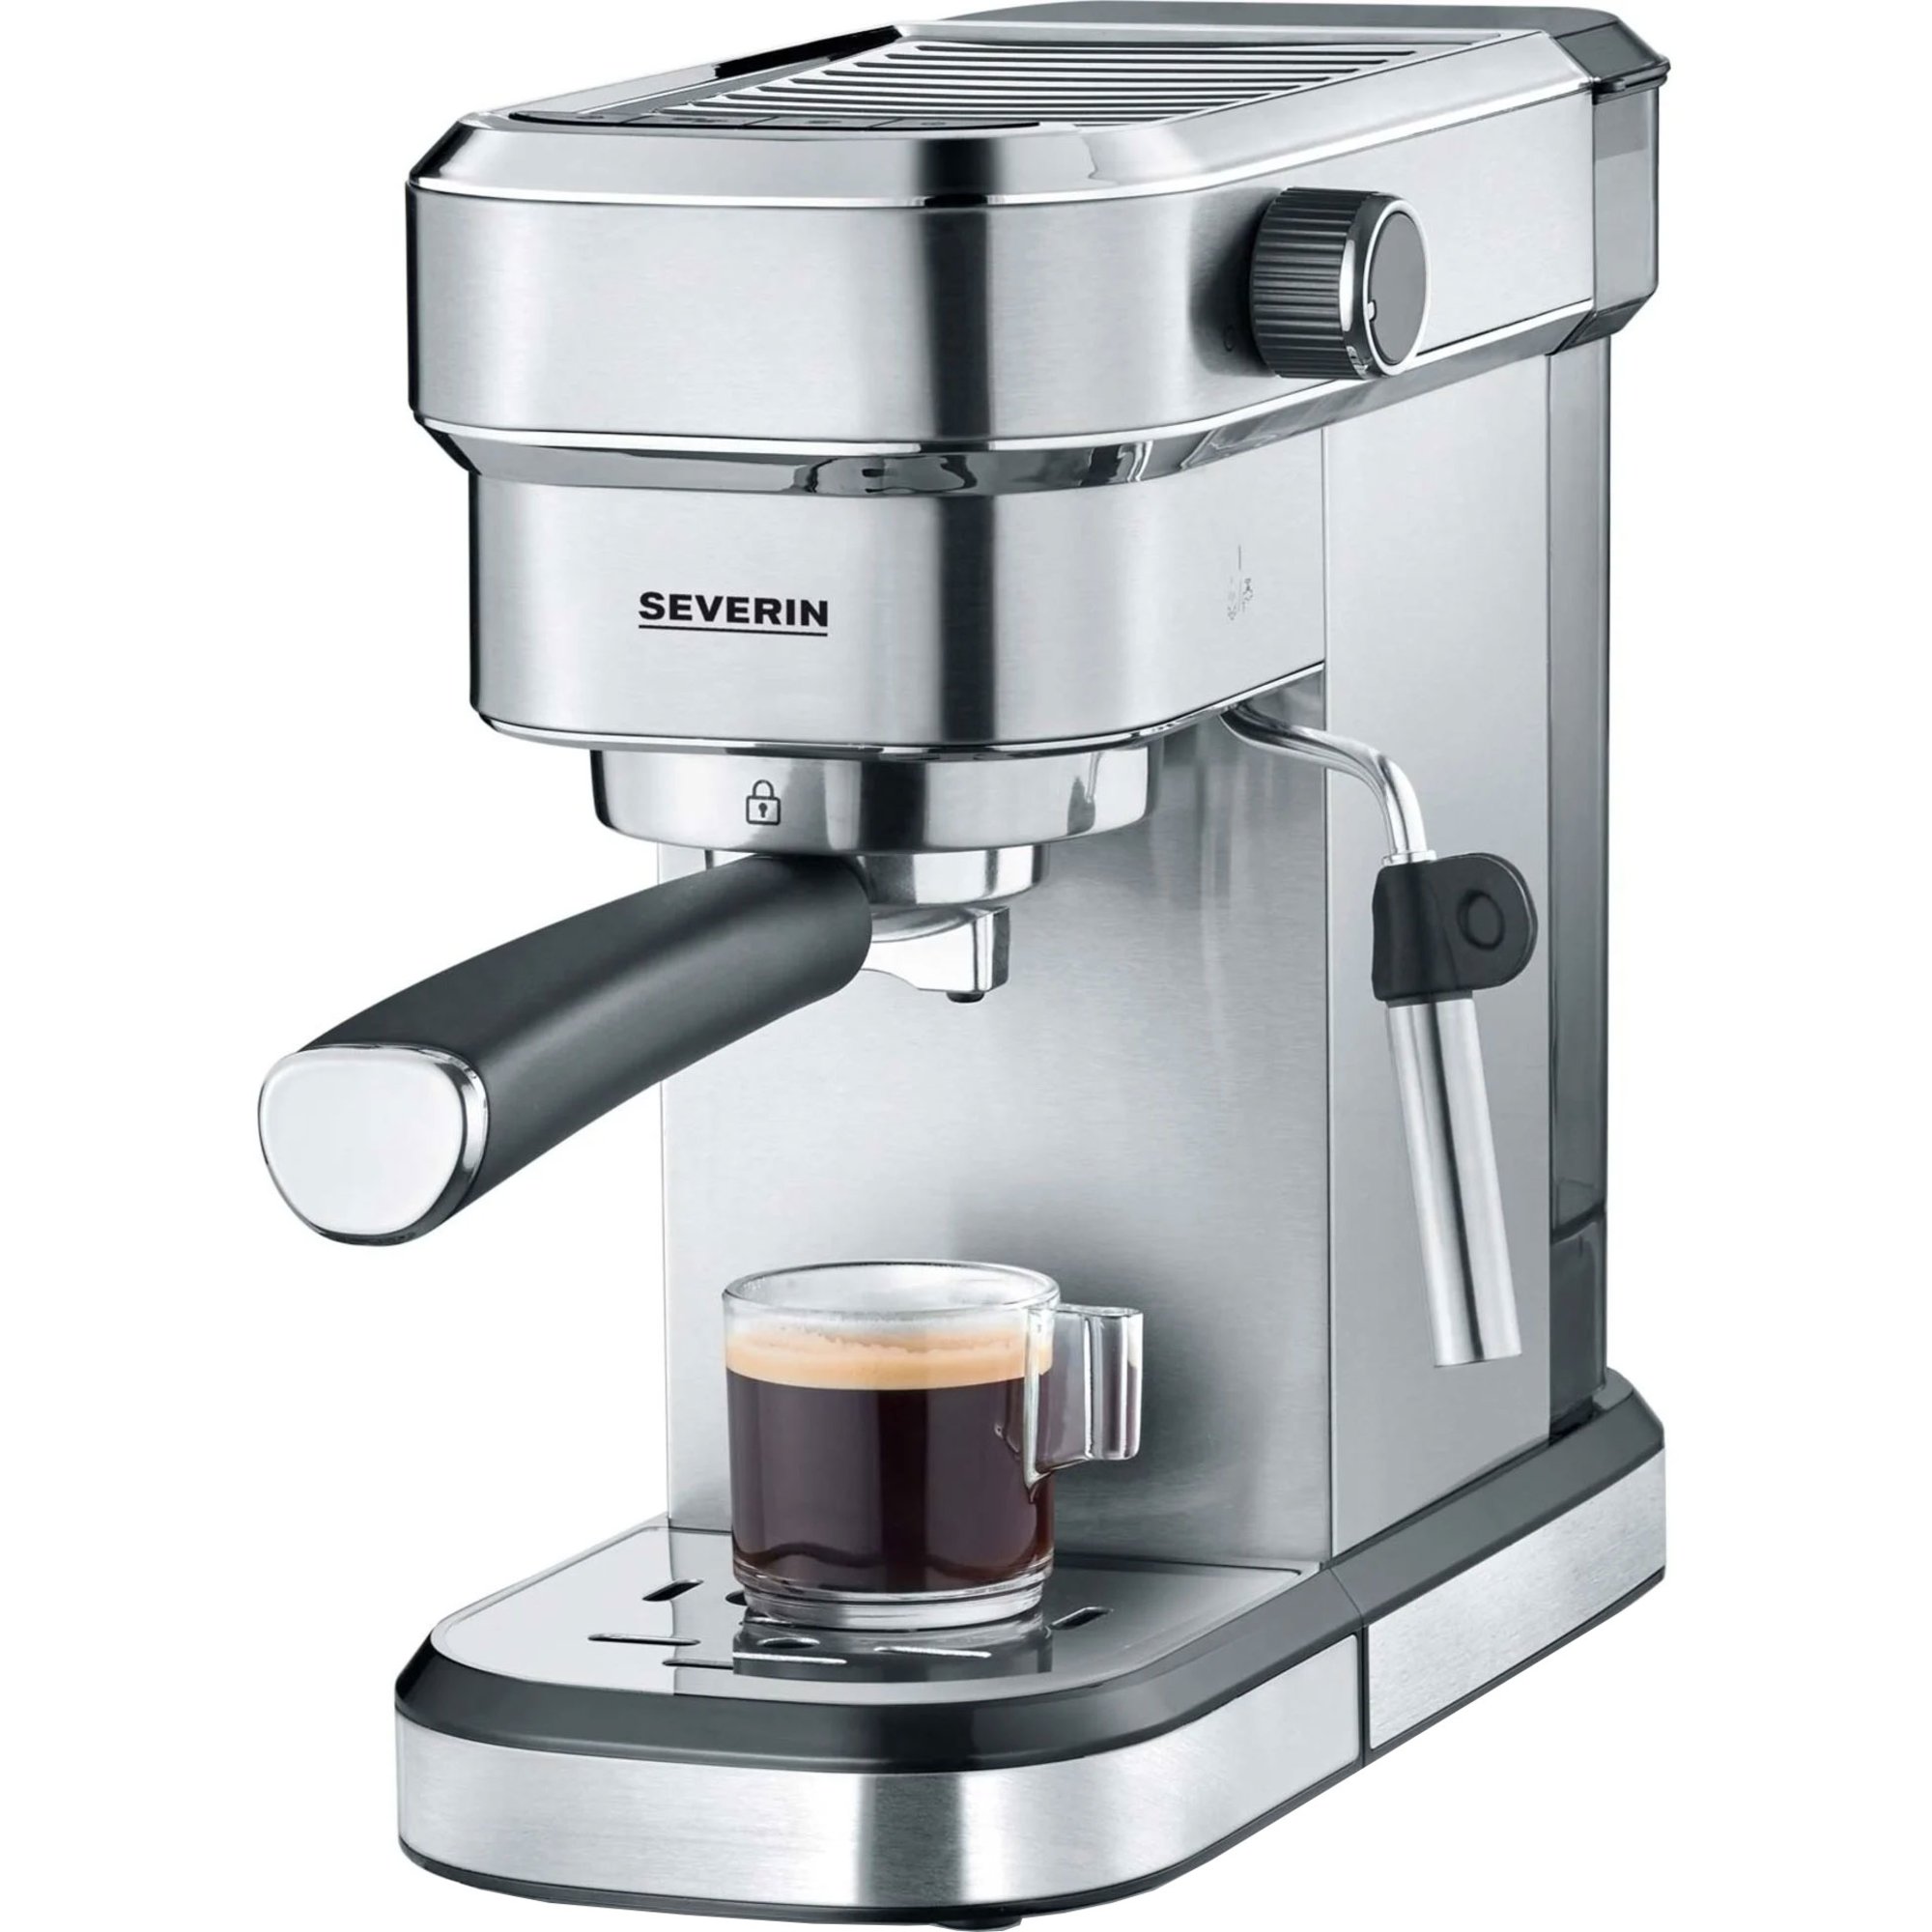 Bedste Severin Espressomaskine i 2023